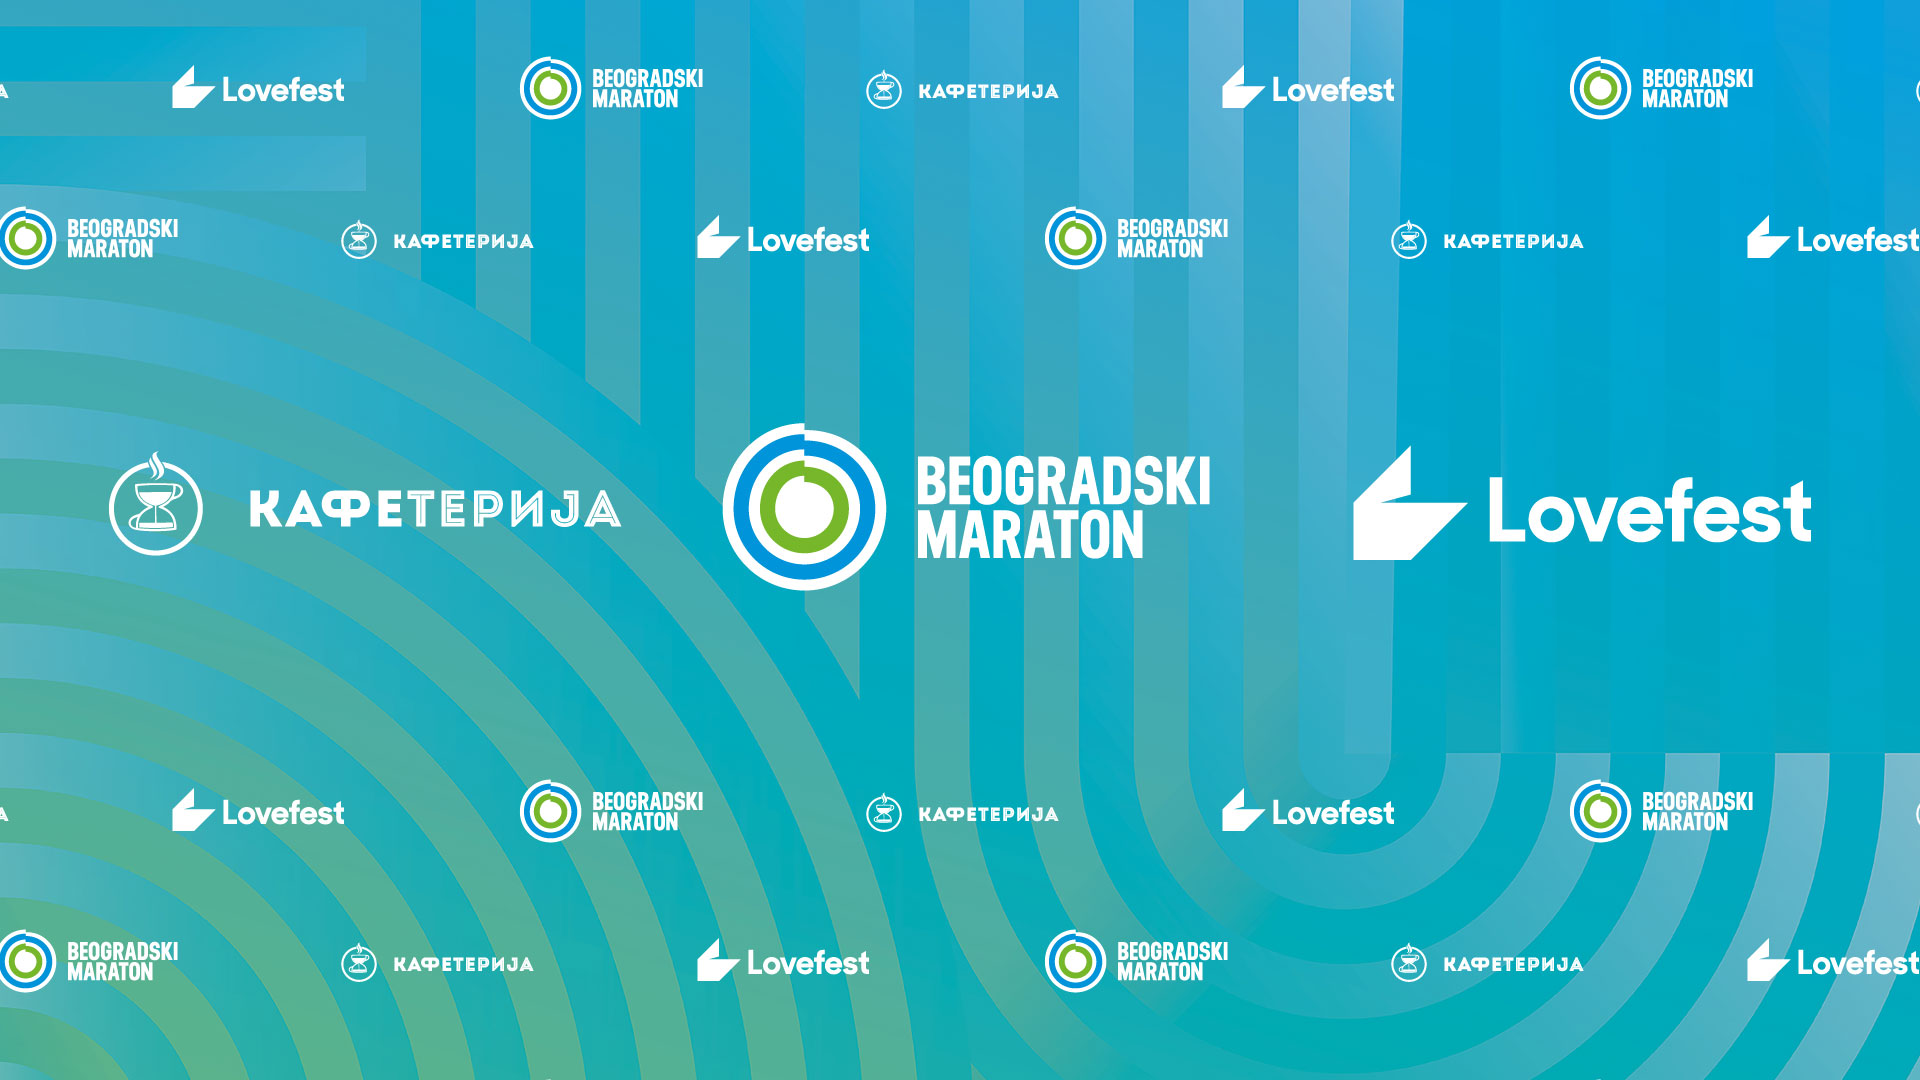 Beogradski maraton i Love fest za najbolju zabavu na stazi